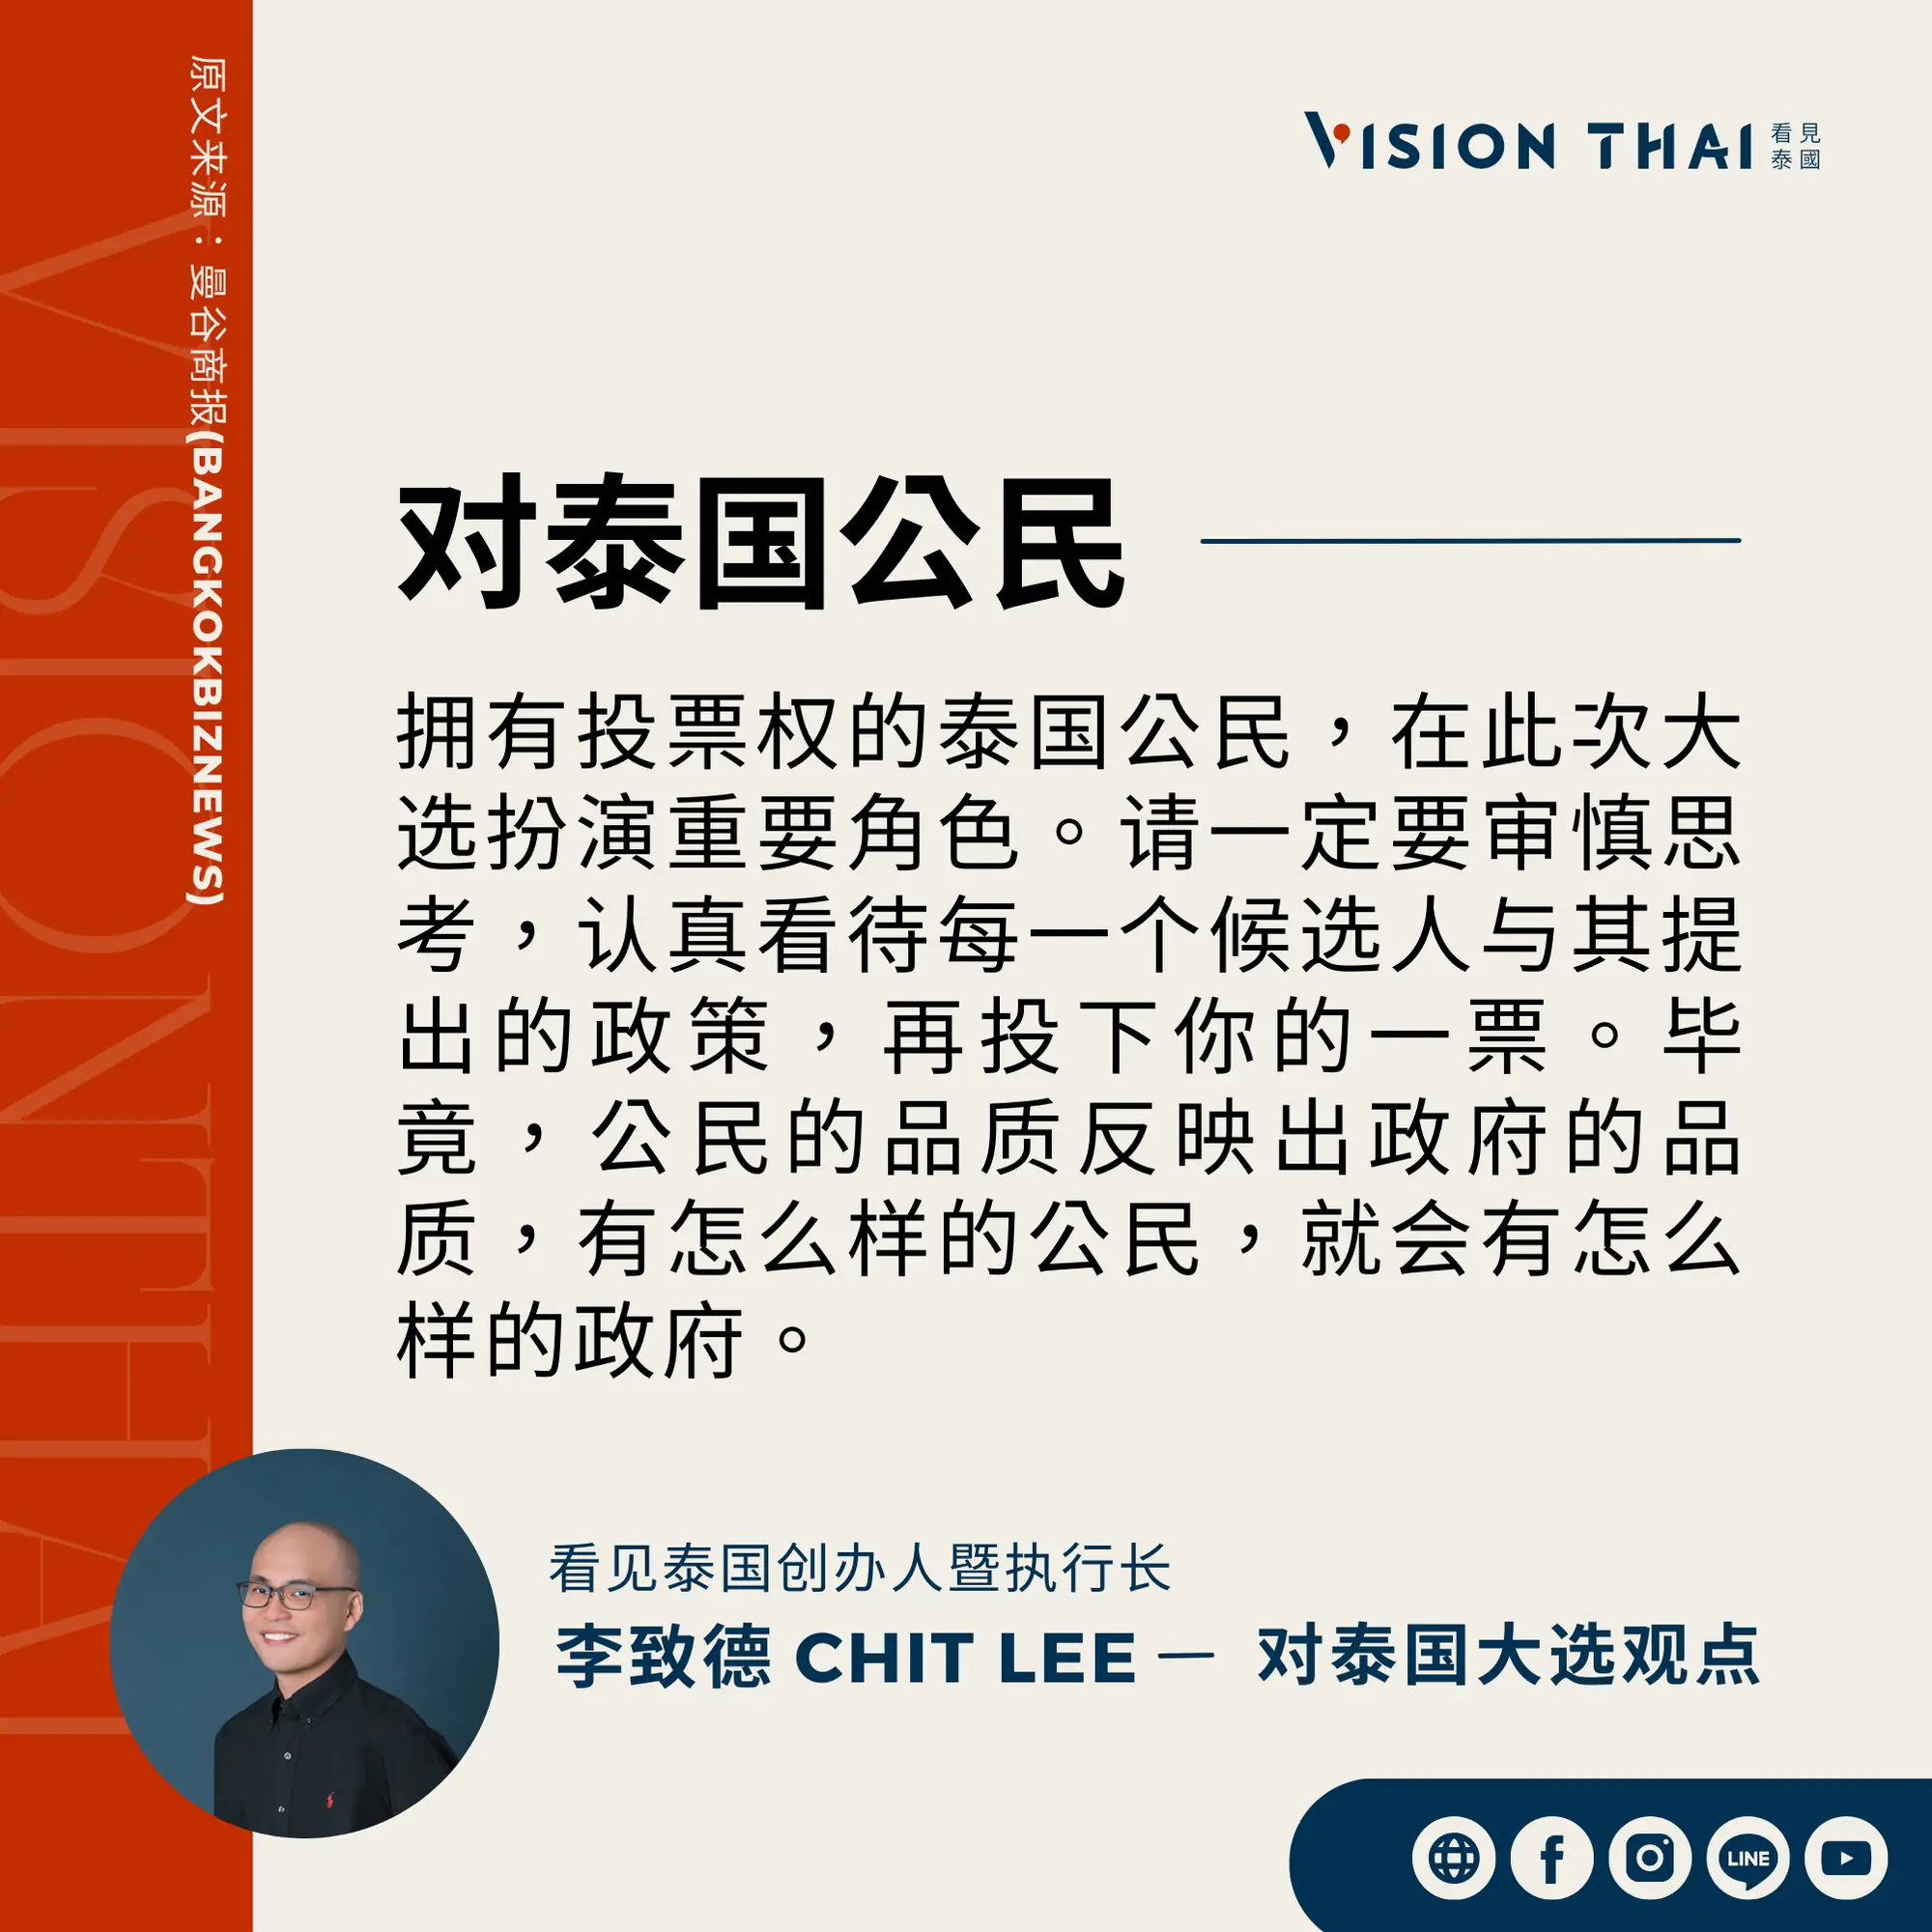 《曼谷商报》采访Vision Thai 看见泰国媒体创办人暨执行长李致德(Chit Lee)对泰国公民的期许（来源：看见泰国制图）